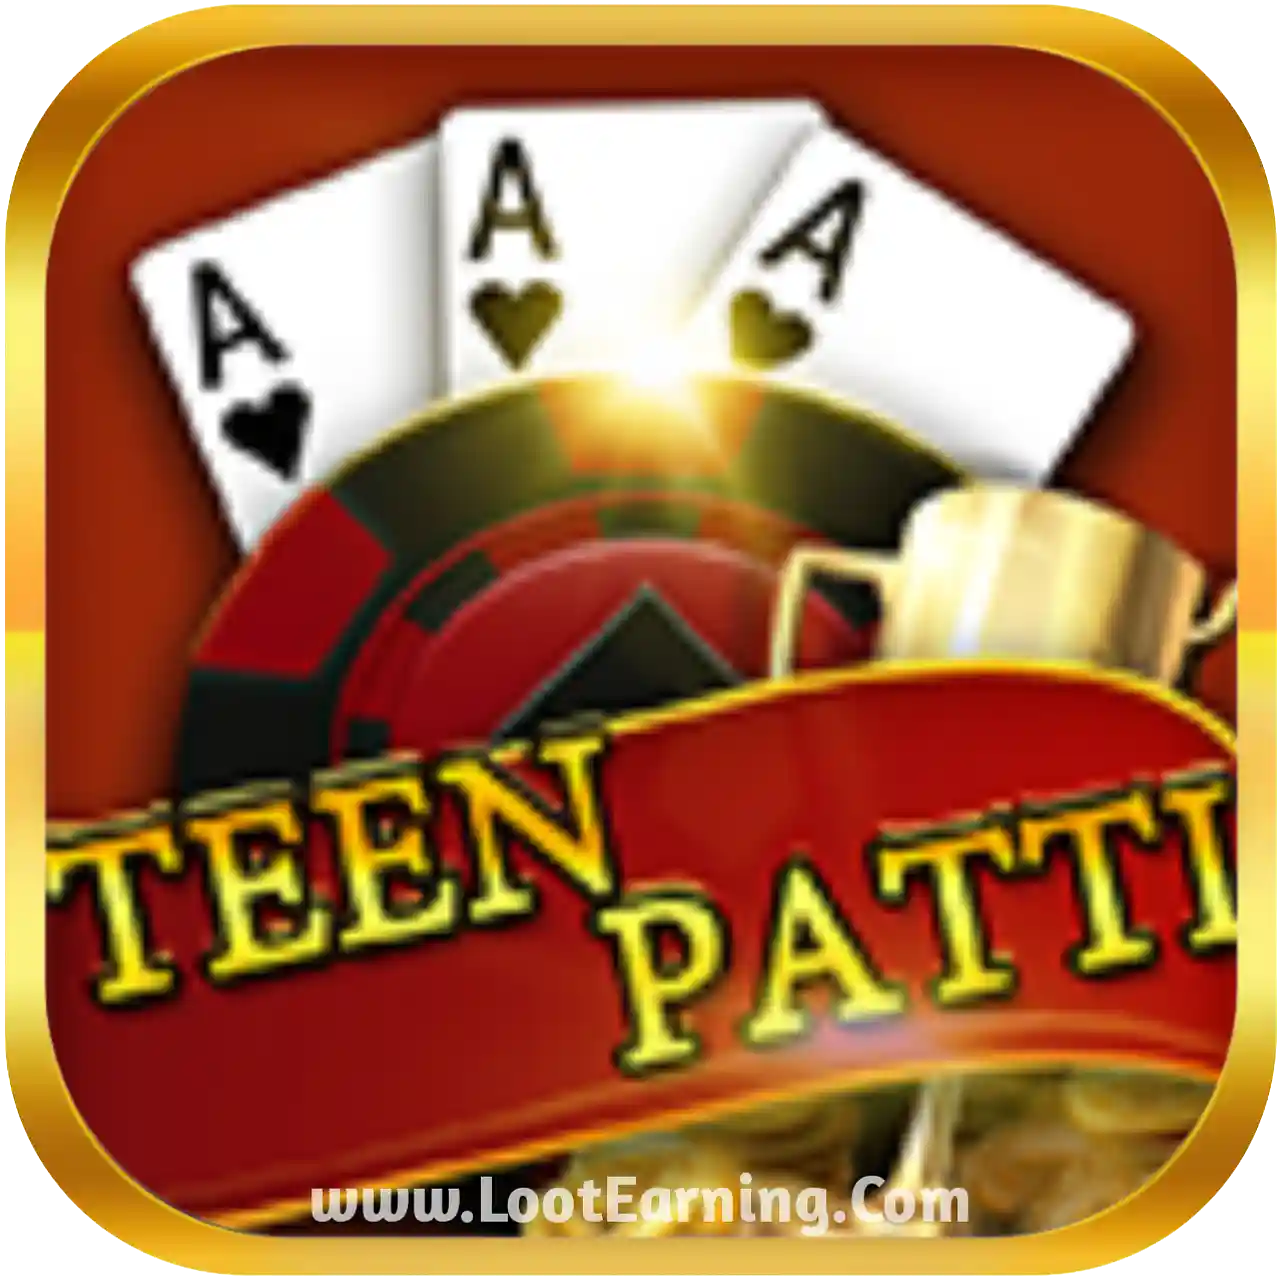 Meta Teen Patti - All Teen Patti App List